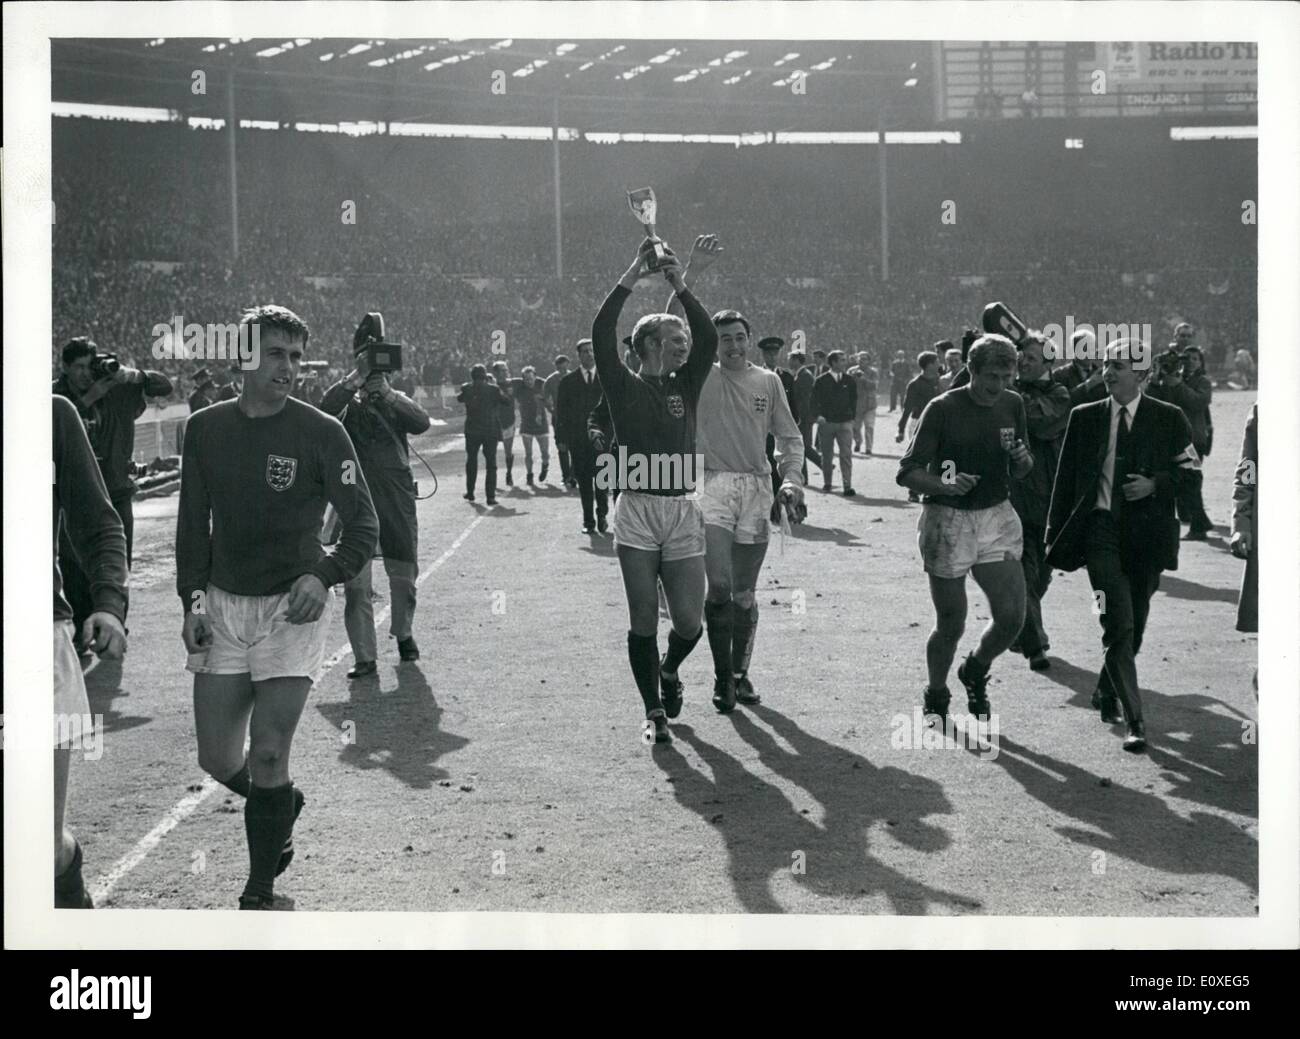 Jul 07, 1966 - La Copa Mundial de Fútbol de 1966. El final oeste de Inglaterra contra Alemania en el estadio de Wembley. Inglaterra ganó por 4-2 en tiempo extra.: Bobby Moore (capitán de Inglaterra) lleva su equipo alrededor del estadio de Wembley Pitch después de Inglaterra de la Copa del Mundo en la victoria final contra Alemania Occidental. Foto de stock